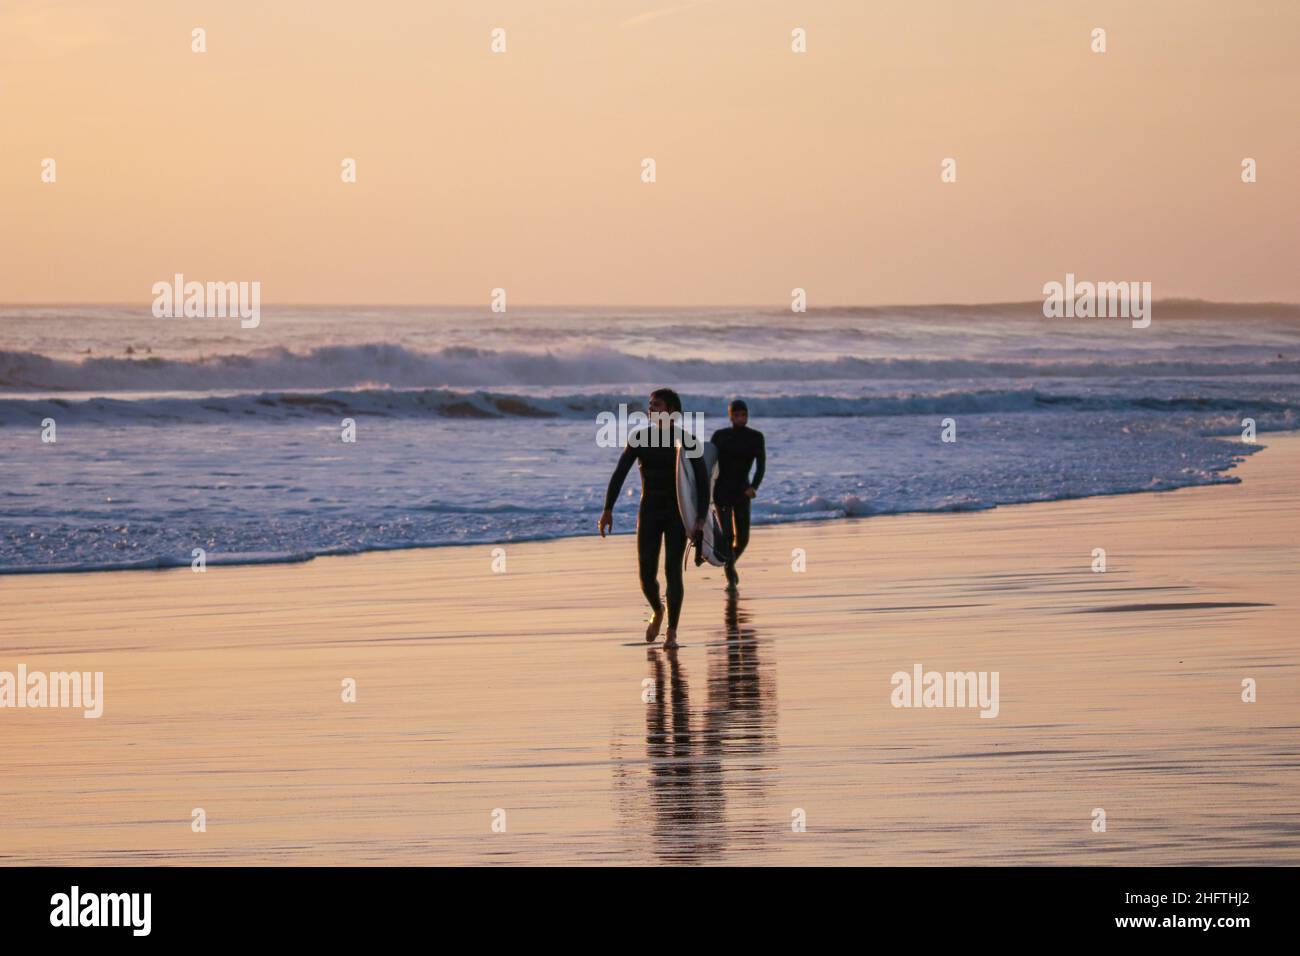 Zwei Surfer mit Surfbrett, die bei Sonnenuntergang an einem Strand surfen. Stockfoto